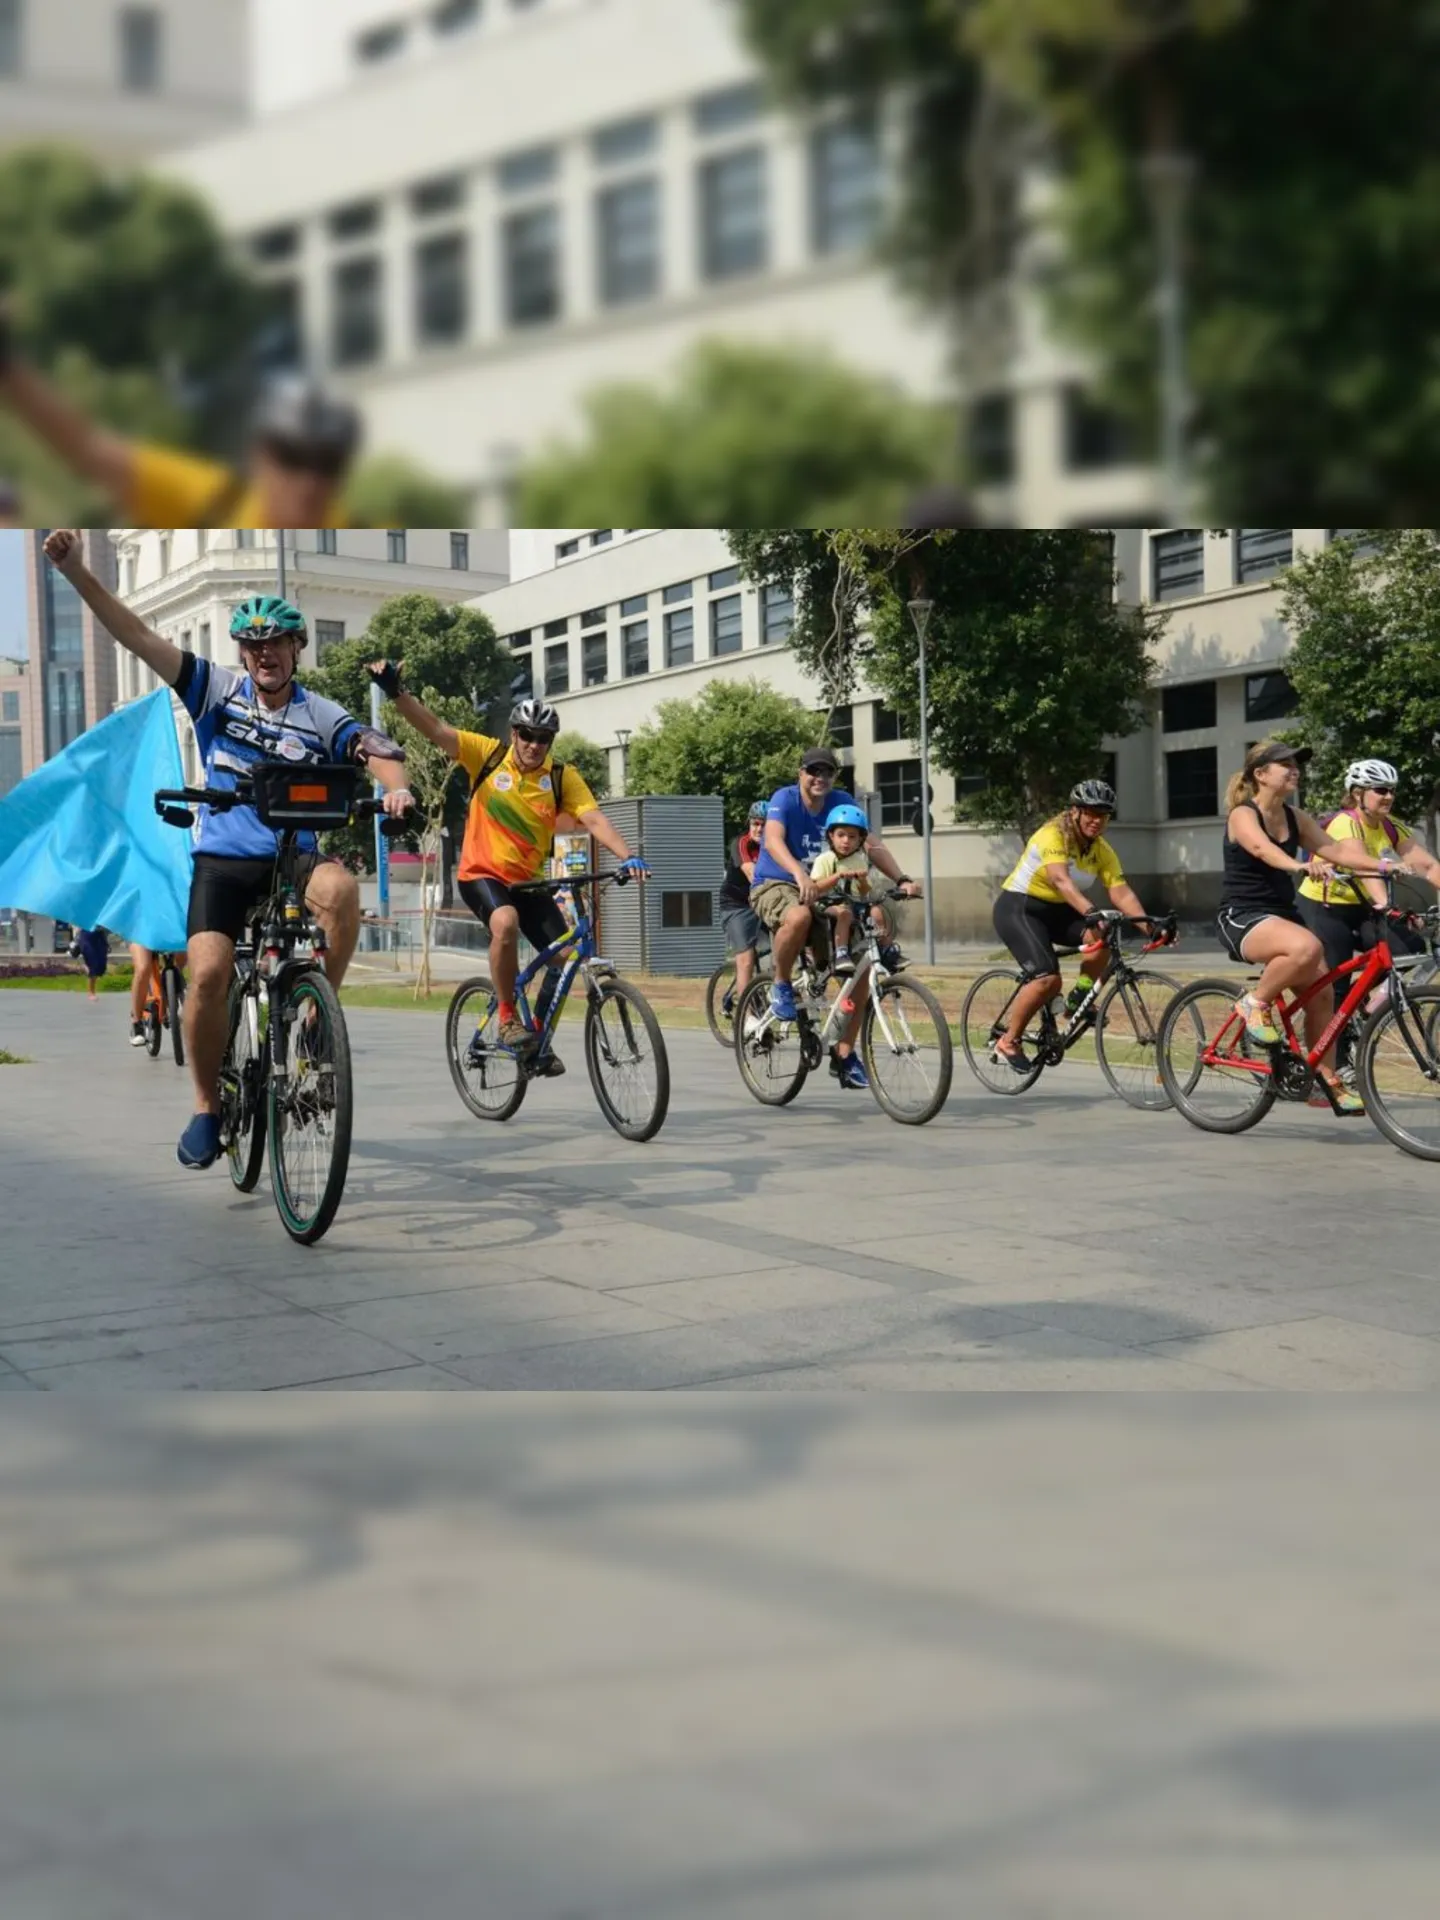 Passeio de bicicleta Pedal da Paz, no centro do Rio, tem como objetivo chamar atenção para a convivência pacífica entre pedestres, ciclistas e motoristas.